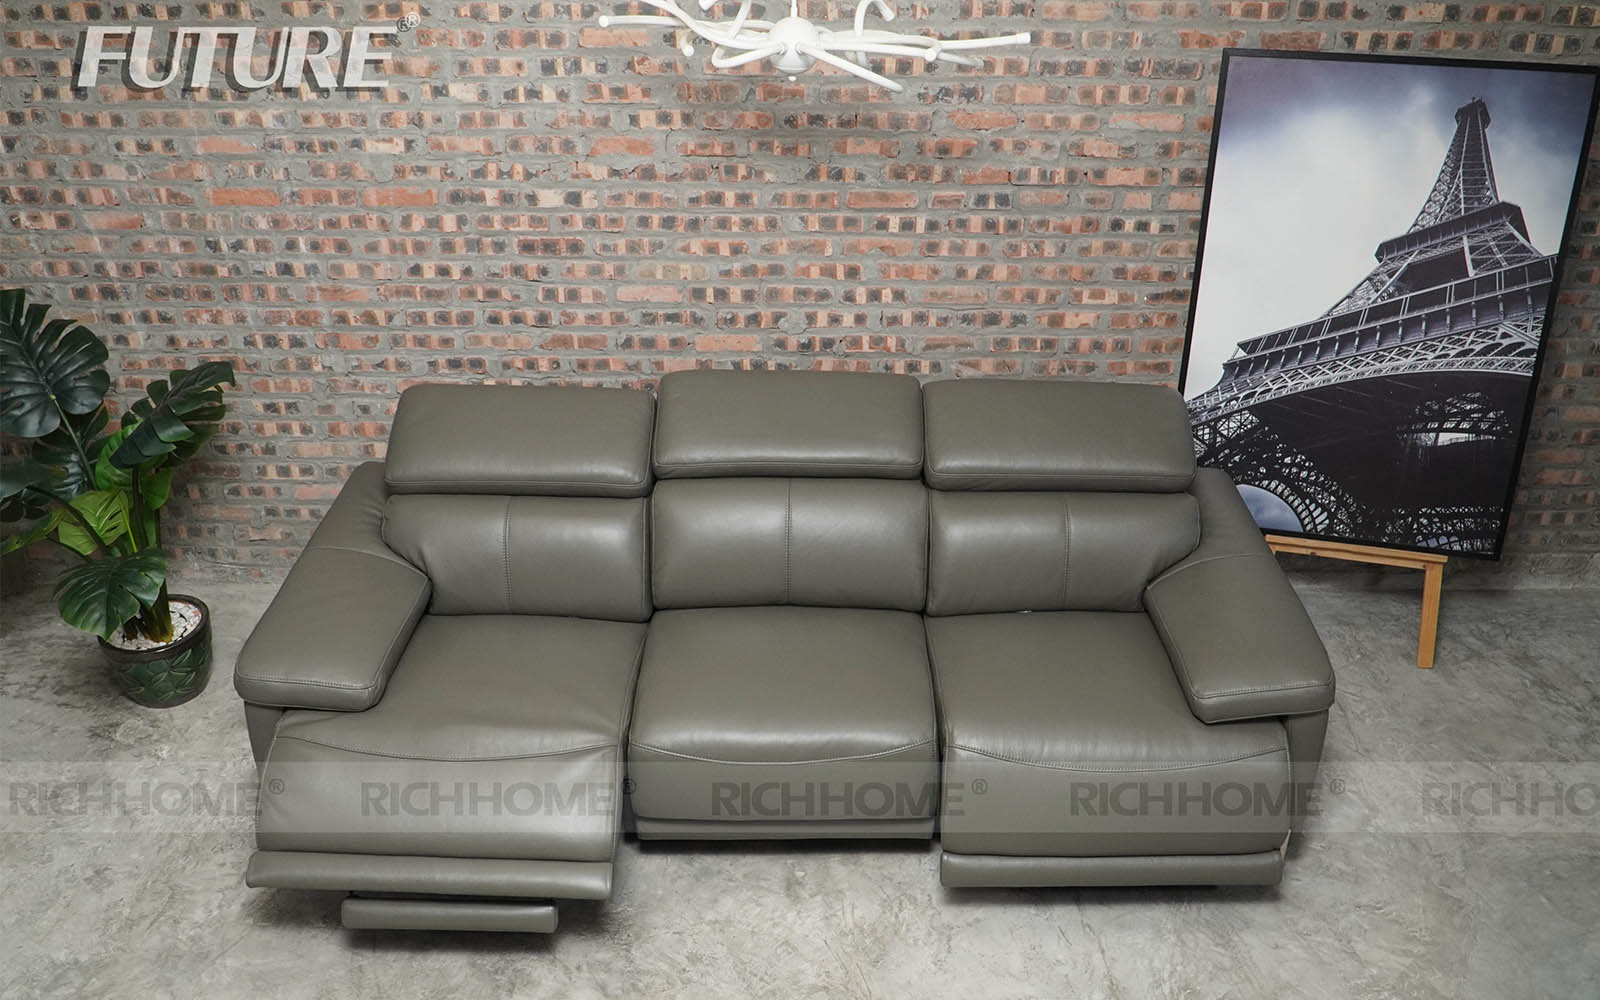 4 kiểu thiết kế sofa nhập khẩu Malaysia ấn tượng nhất - Ảnh 3